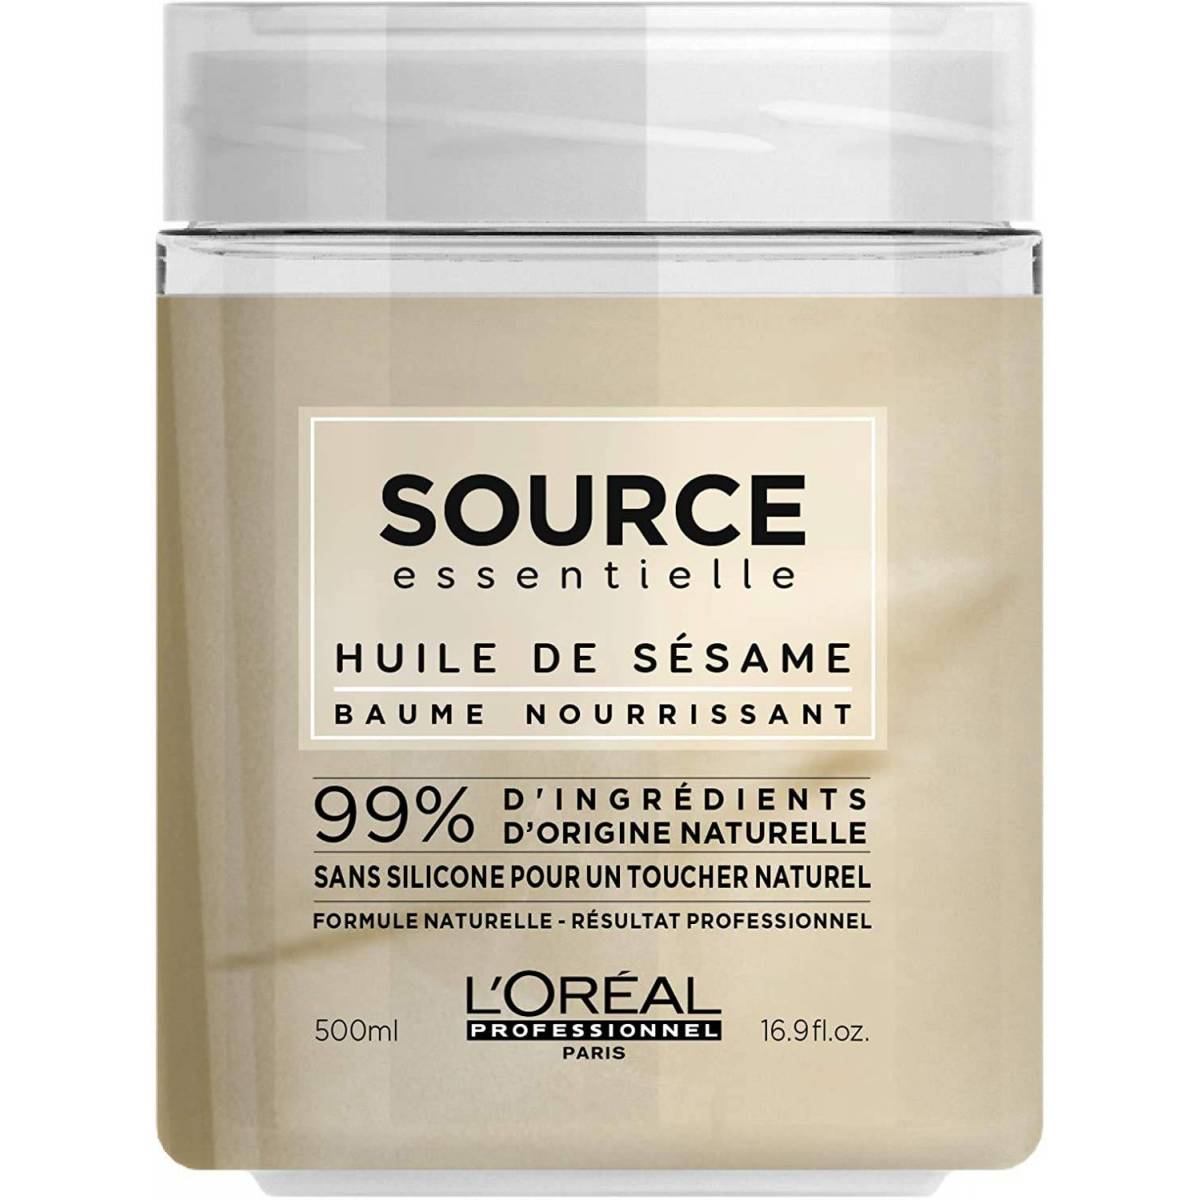 Masque nourissant L'Oréal Source essentielle à l'huile de sésame